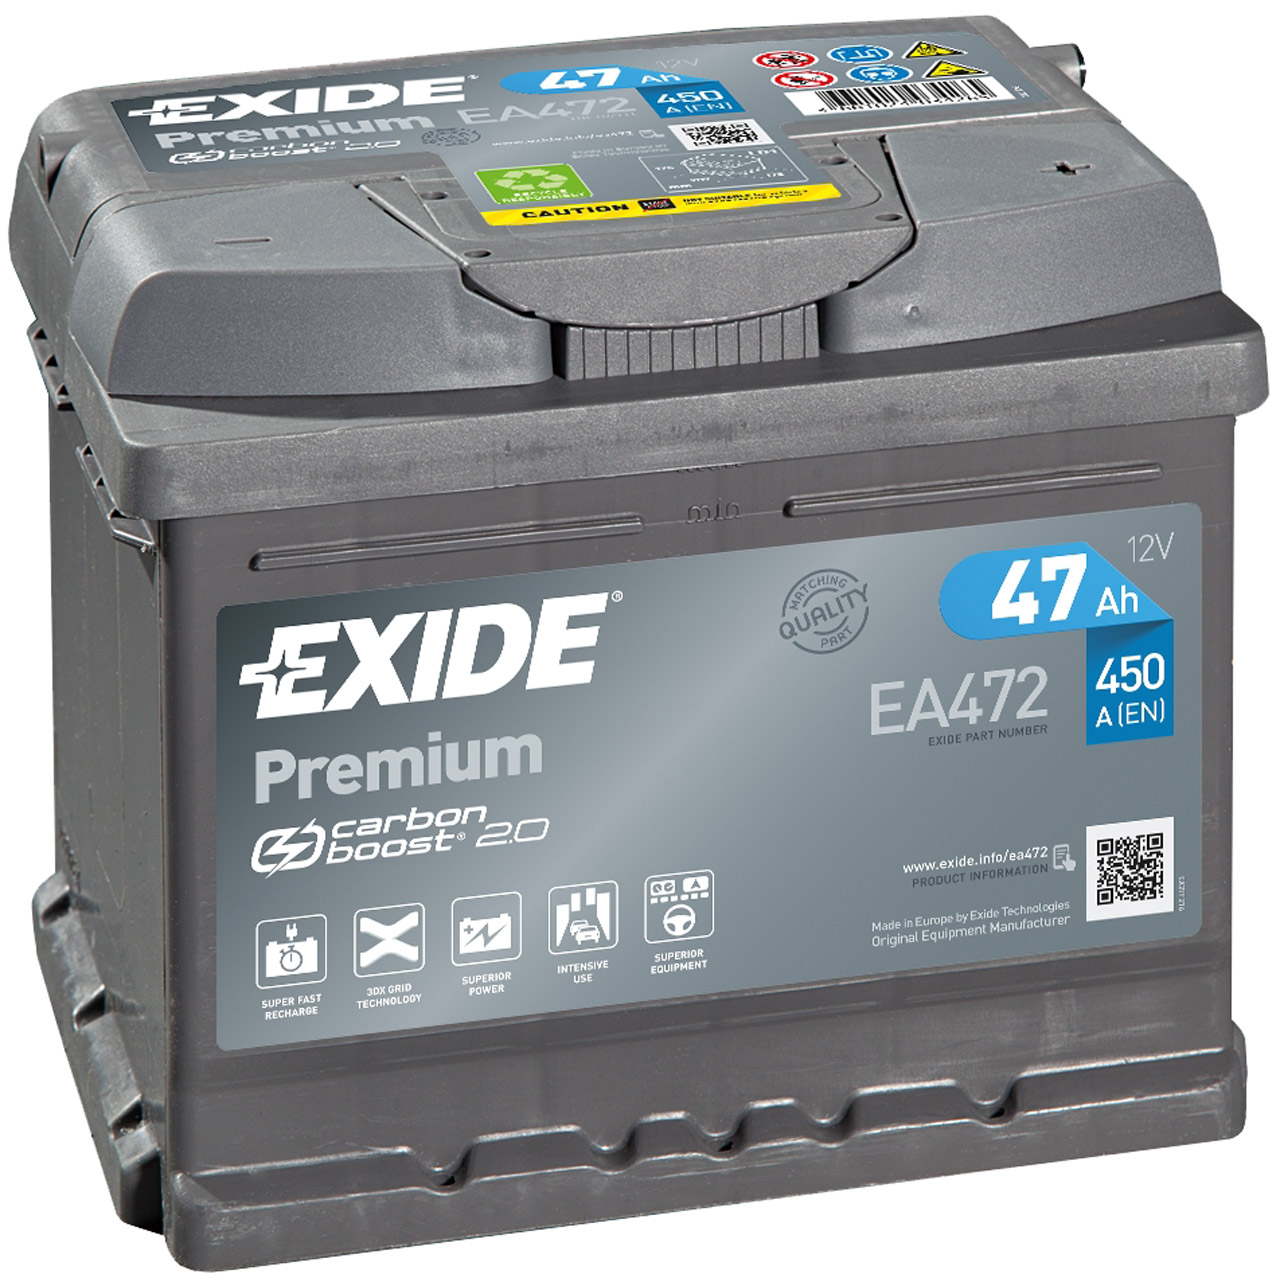 Exide EA900 Premium Carbon Boost Autobatterie 90Ah